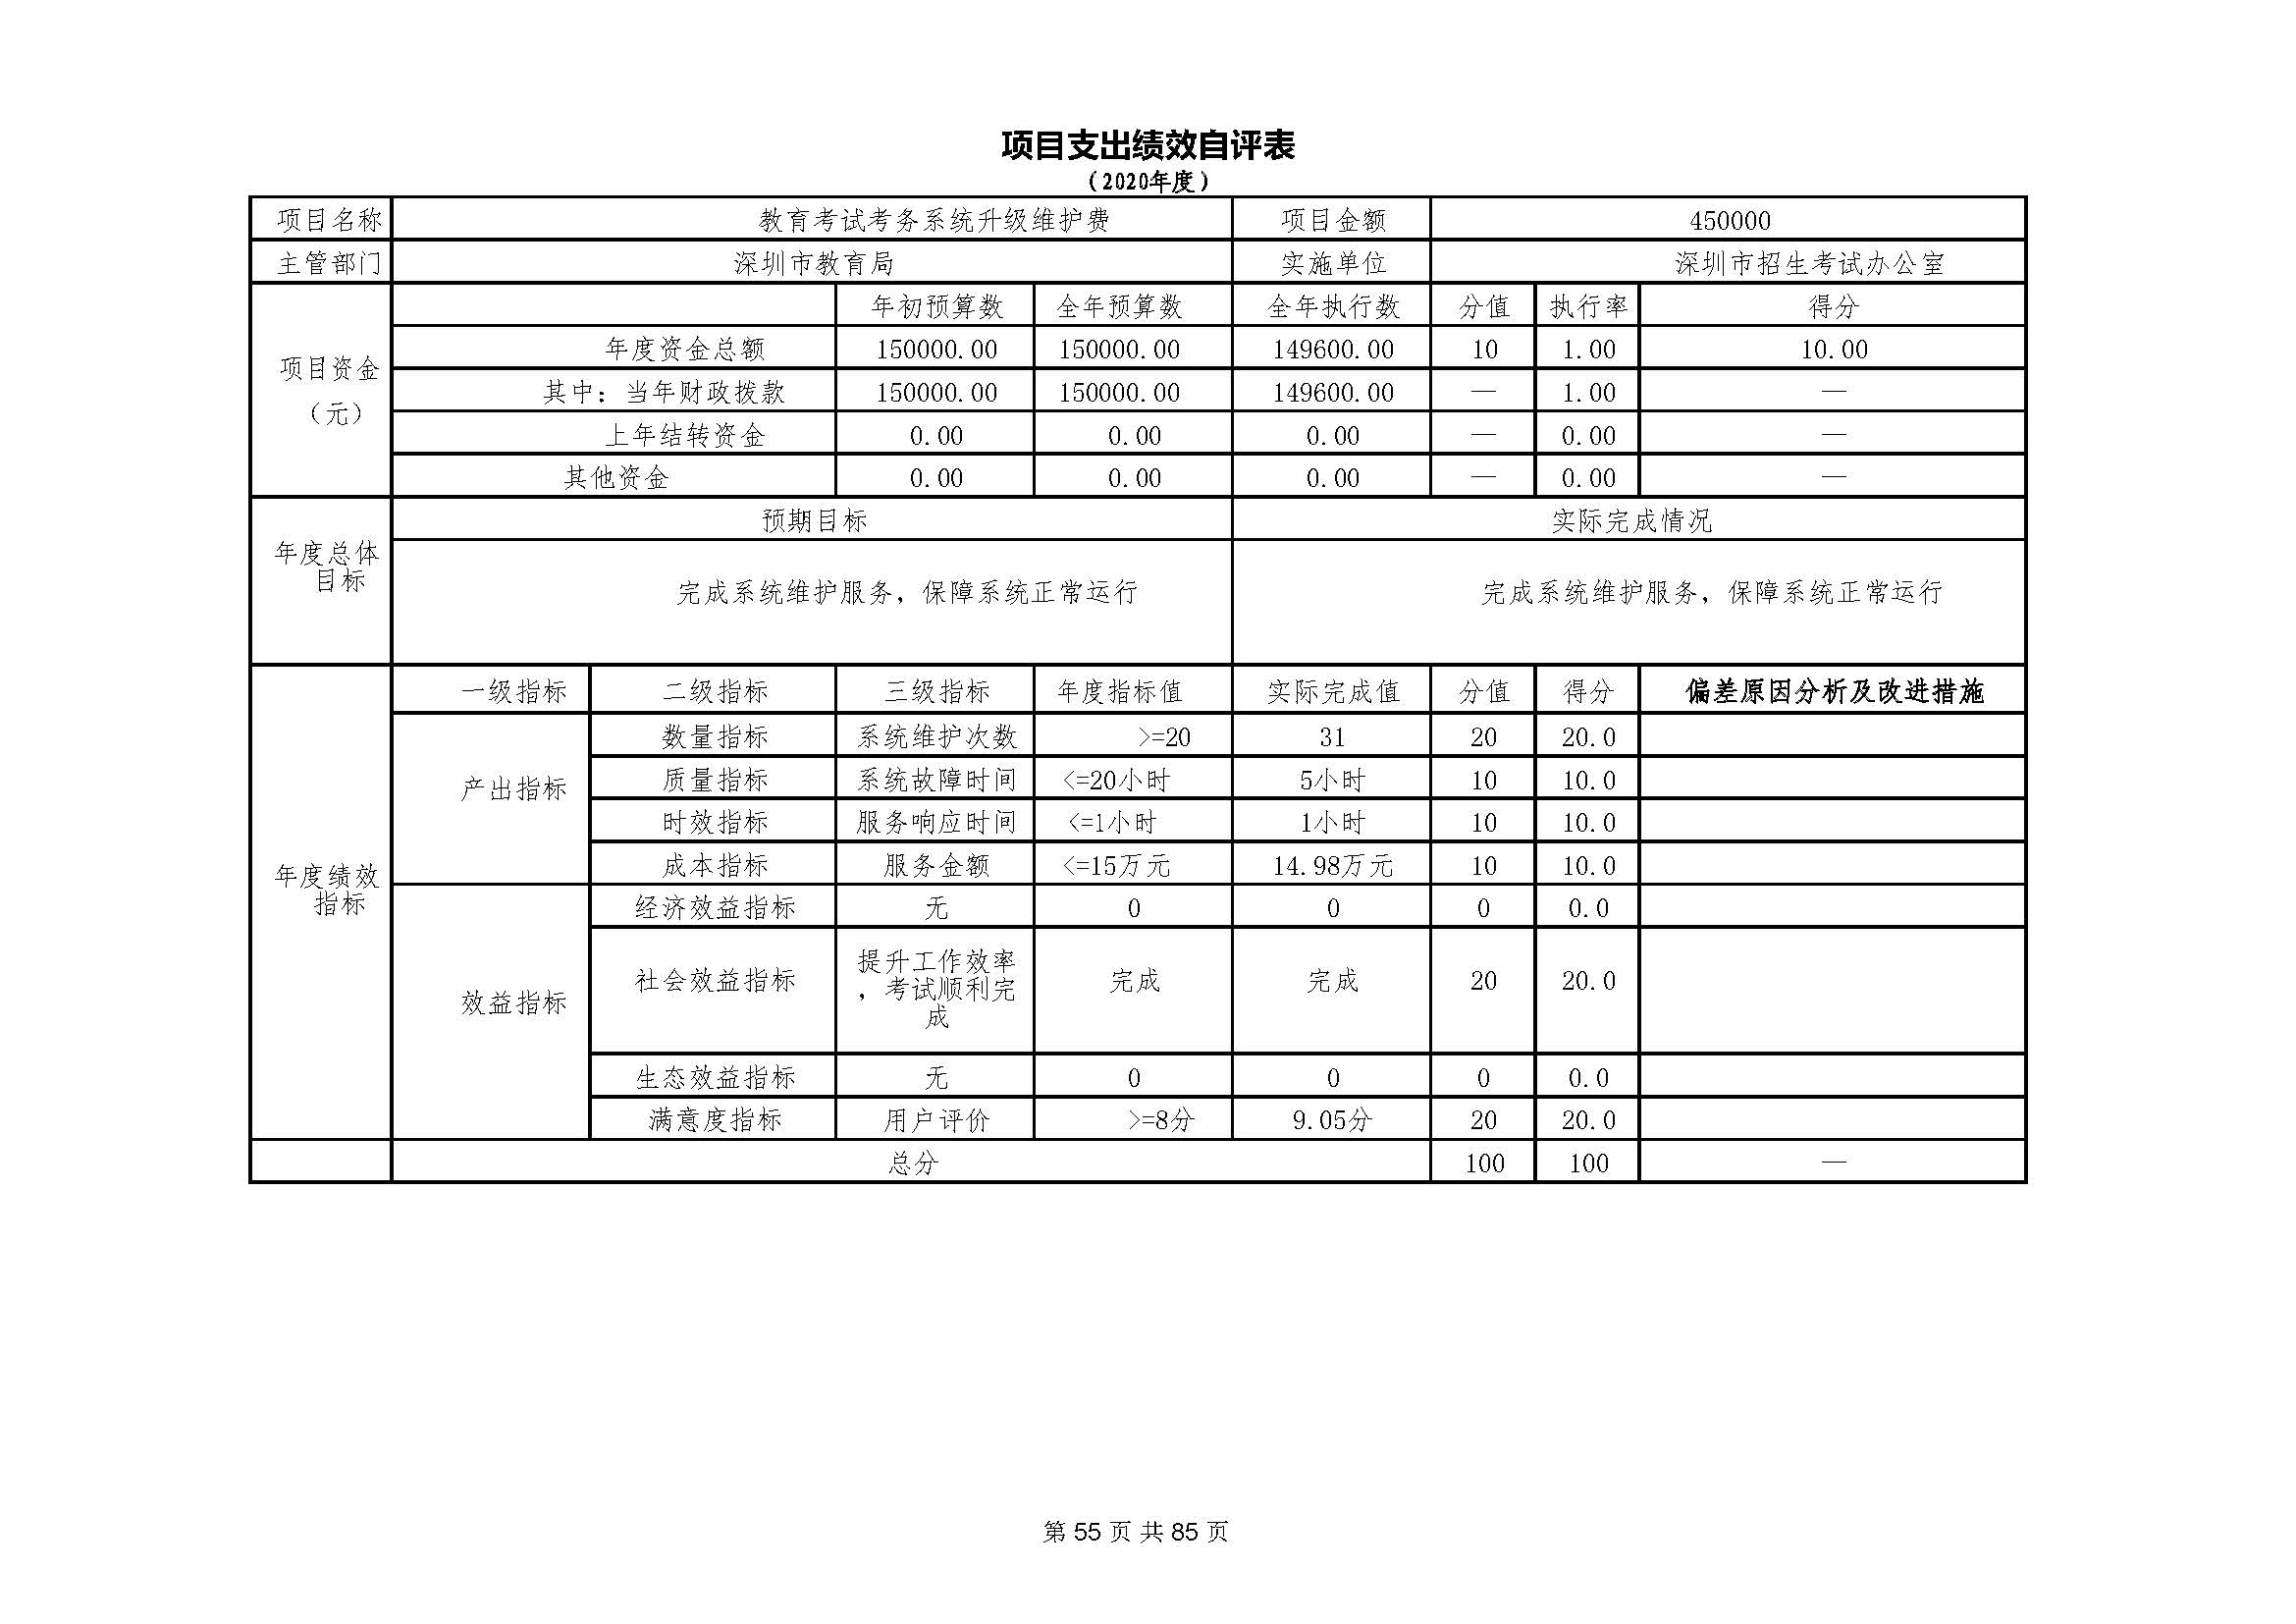 深圳市招生考试办公室2020年度部门决算_页面_56.jpg